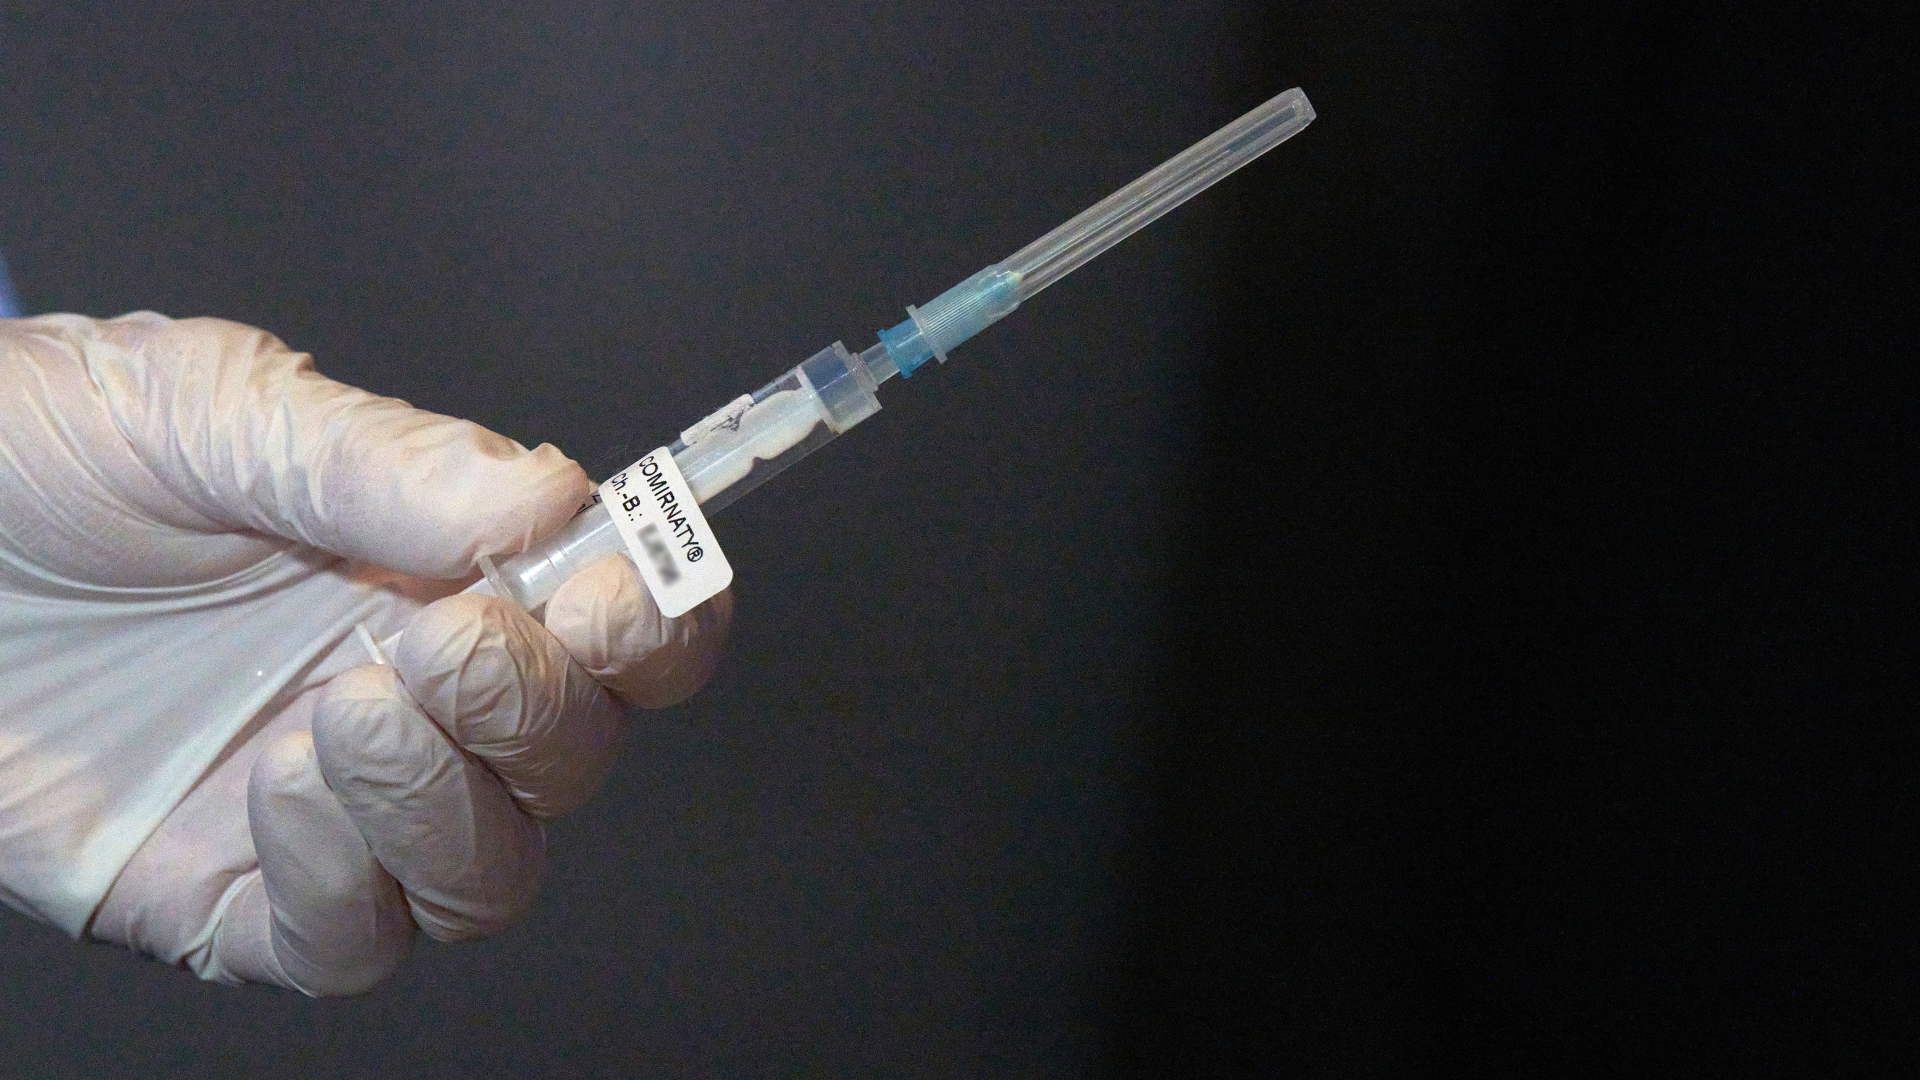 Eine Mitarbeiterin des Impfteams überprüft vor Beginn der Corona-Impfungen eine Spritze mit dem Impfstoff gegen Covid-19. | dpa